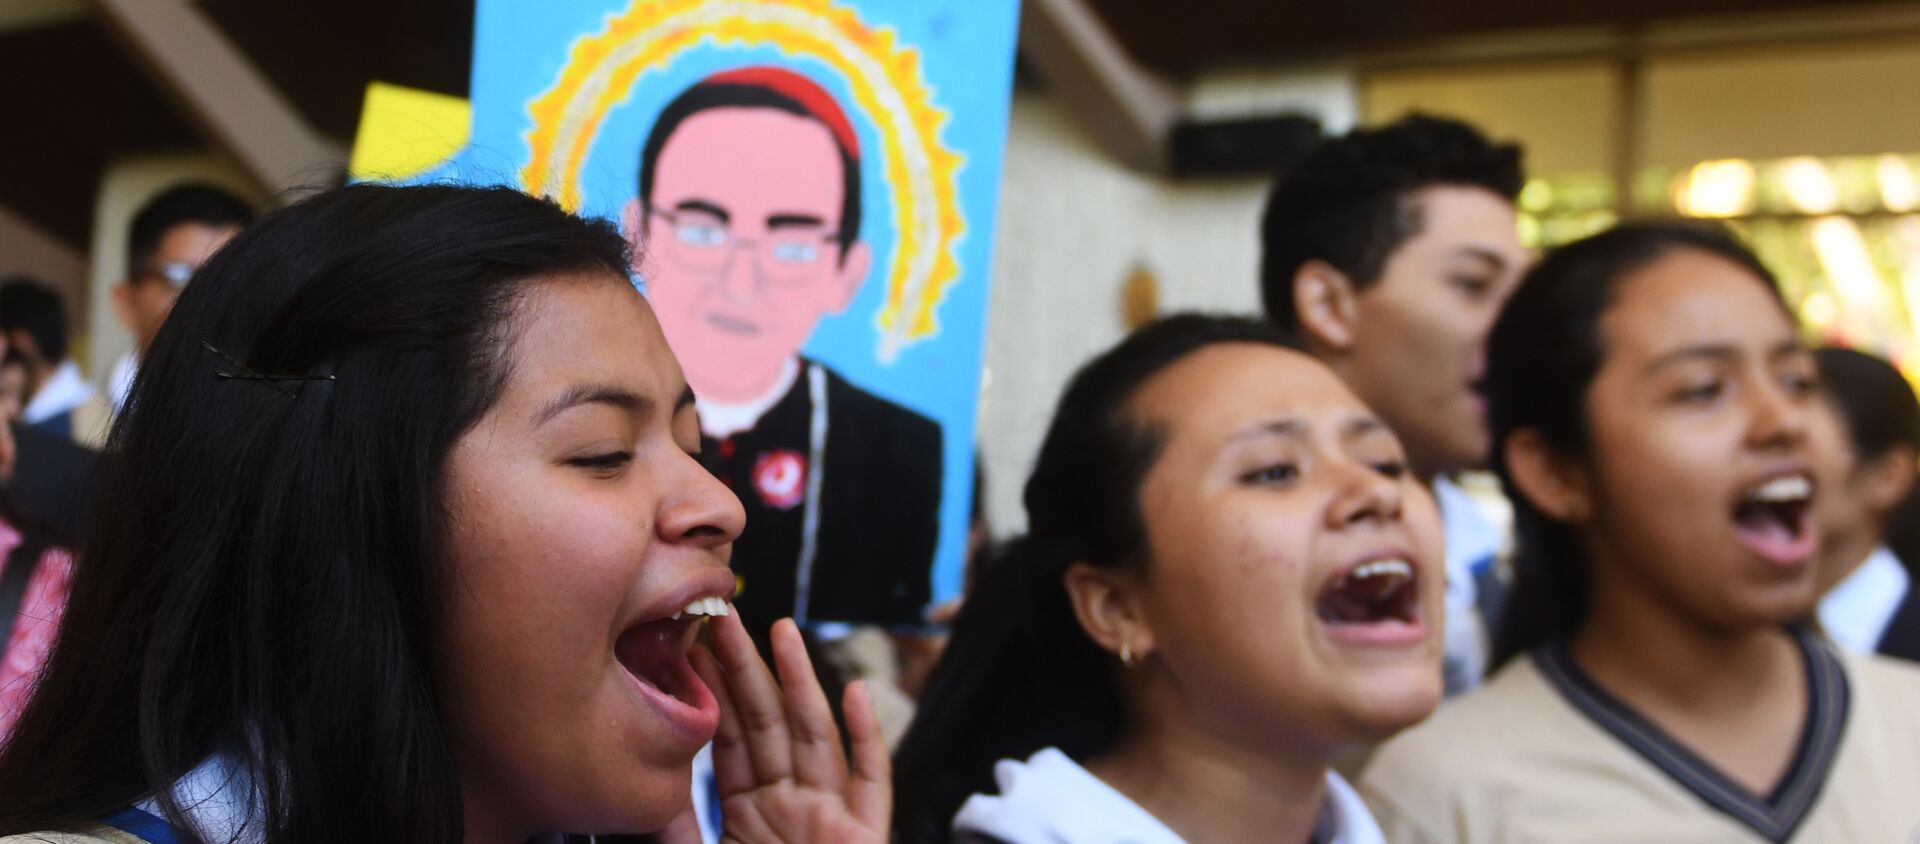 Los creyentes católicos celebran la canonización de monseñor Óscar Romero, arzobispo salvadoreño - Sputnik Mundo, 1920, 14.03.2018